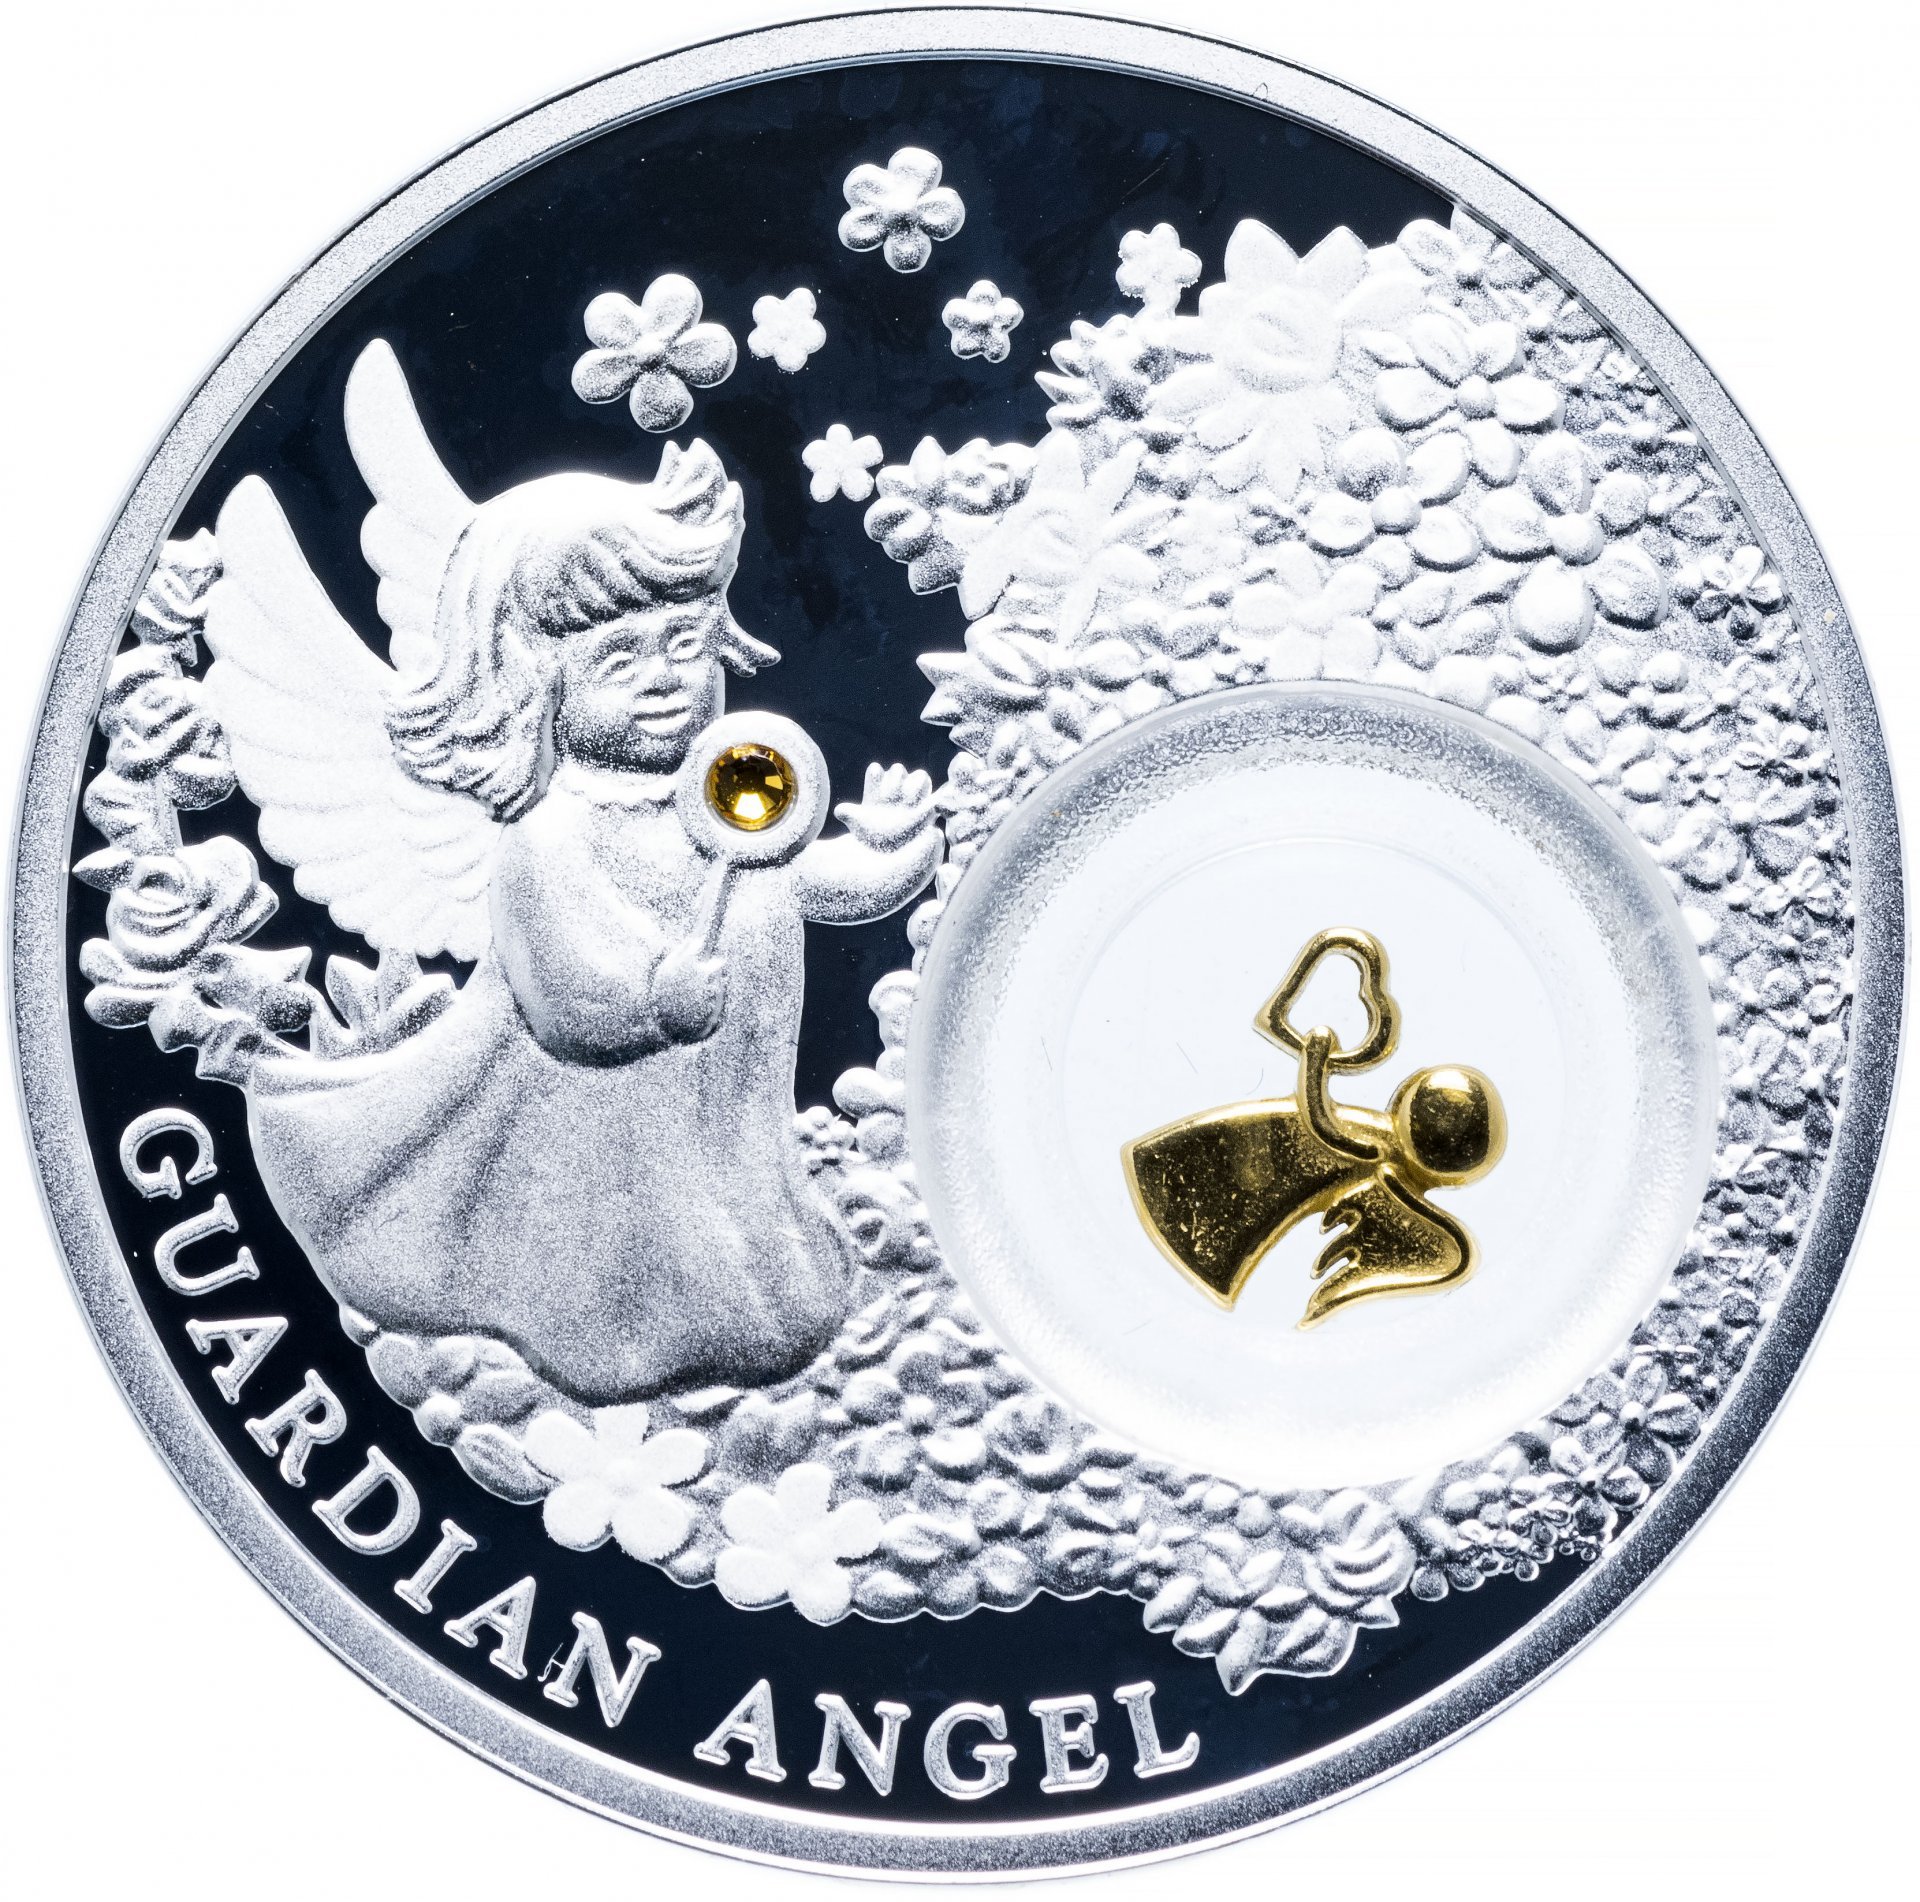 Серебряные монеты сбербанкам каталог. Ангел хранитель Ниуэ монета. Ангел хранитель монета серебряная Сбербанк. Ниуэ 2 доллара 2018 ангел хранитель. Монета ангел-хранитель (Ниуэ) - 19.